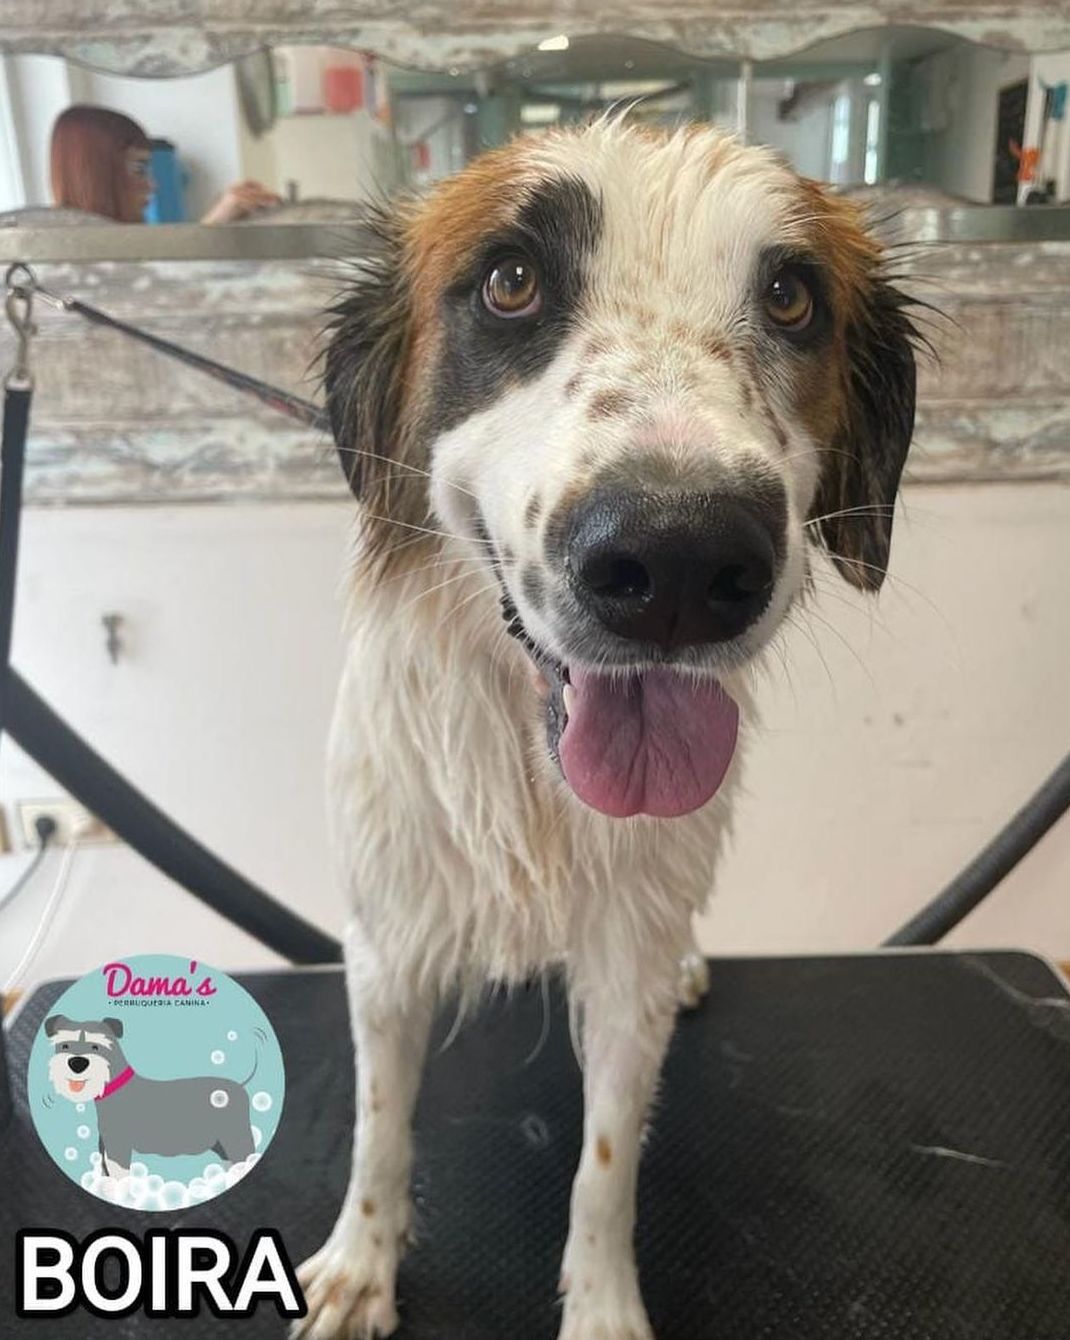 Foto 91 de Peluquería canina con todo tipo de tratamientos para tu mascota en  | Dama's